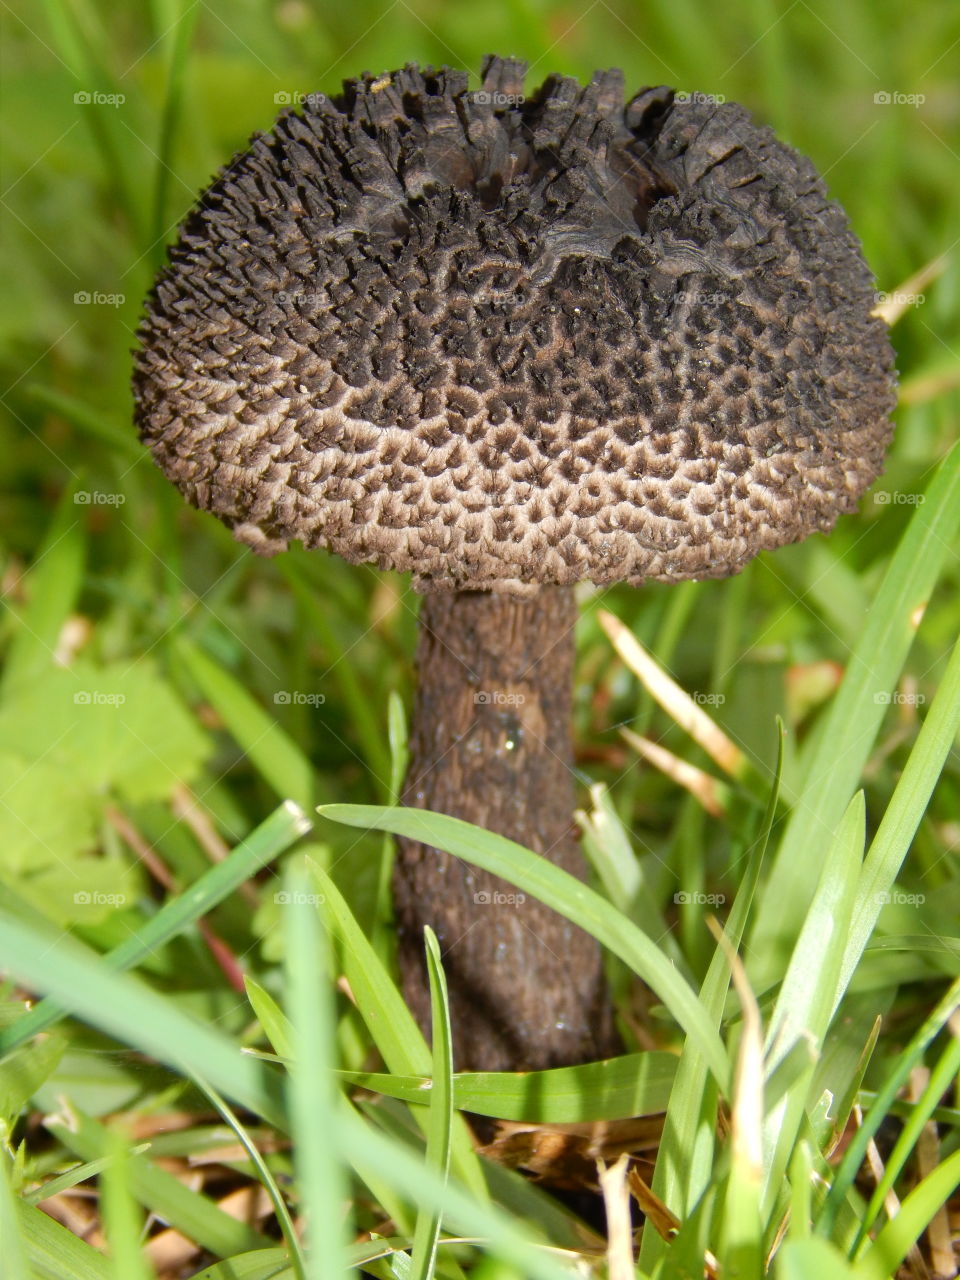 Black mushroom in green grass